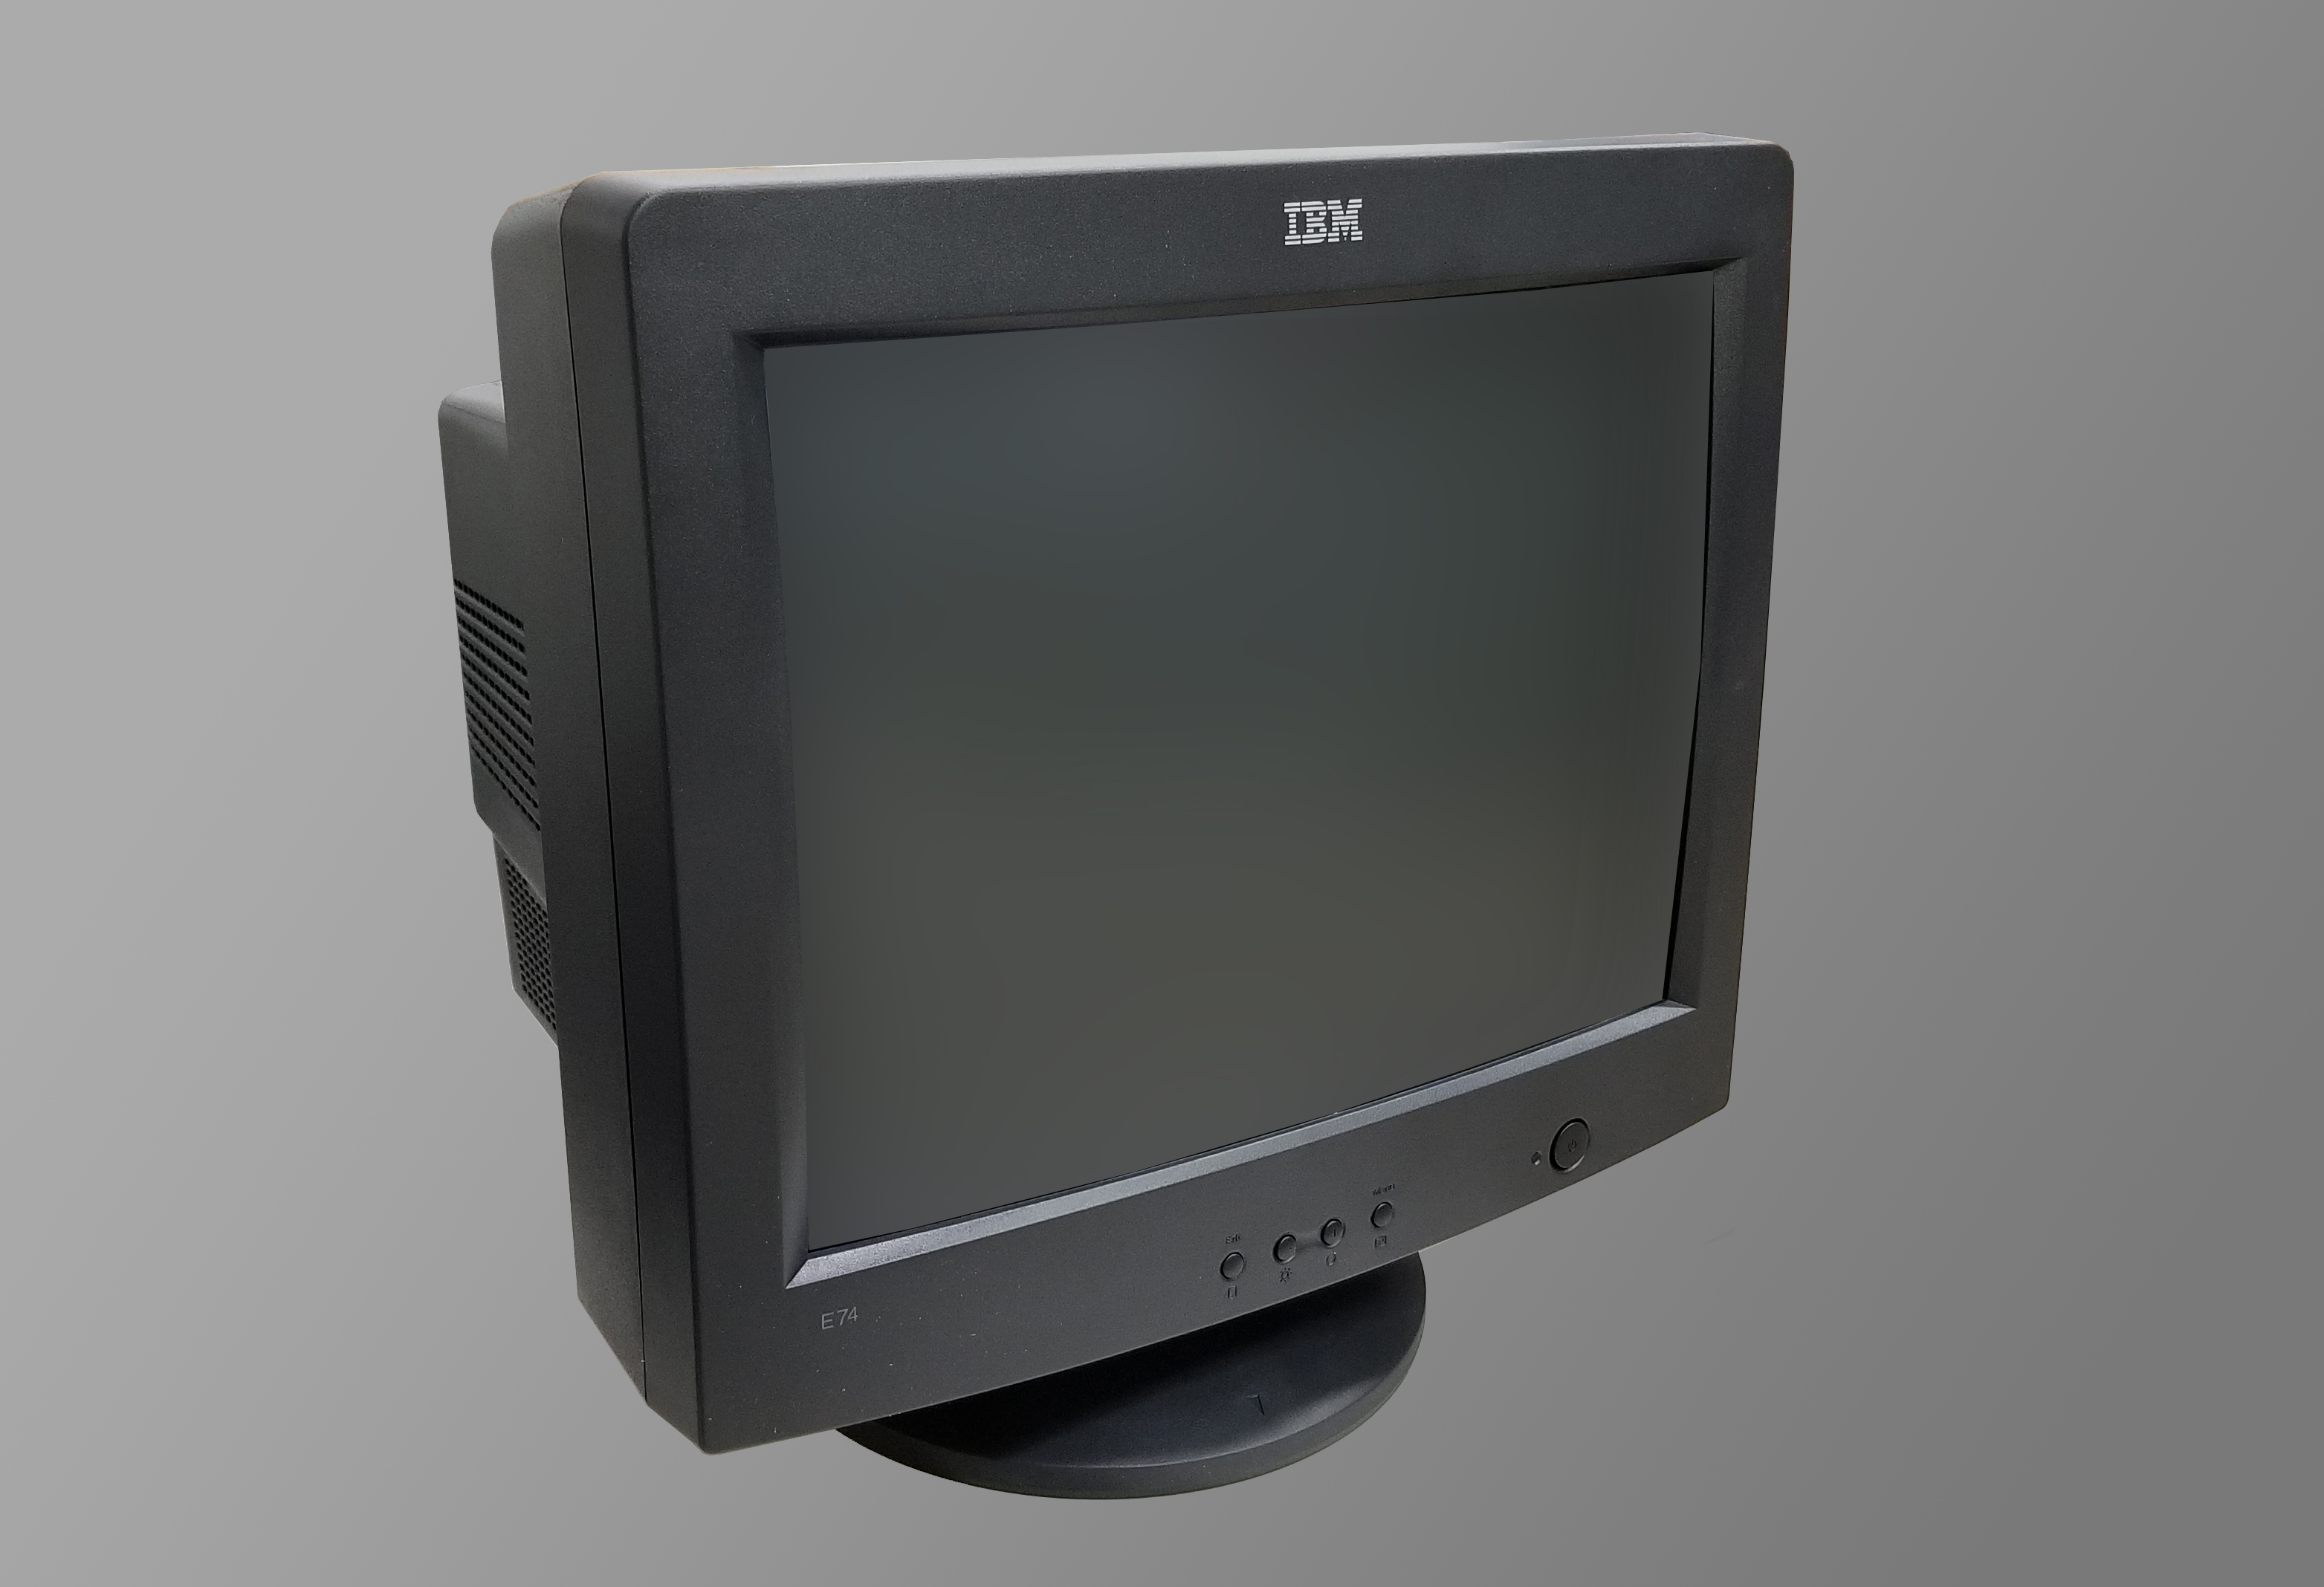 IBM E74 17inch